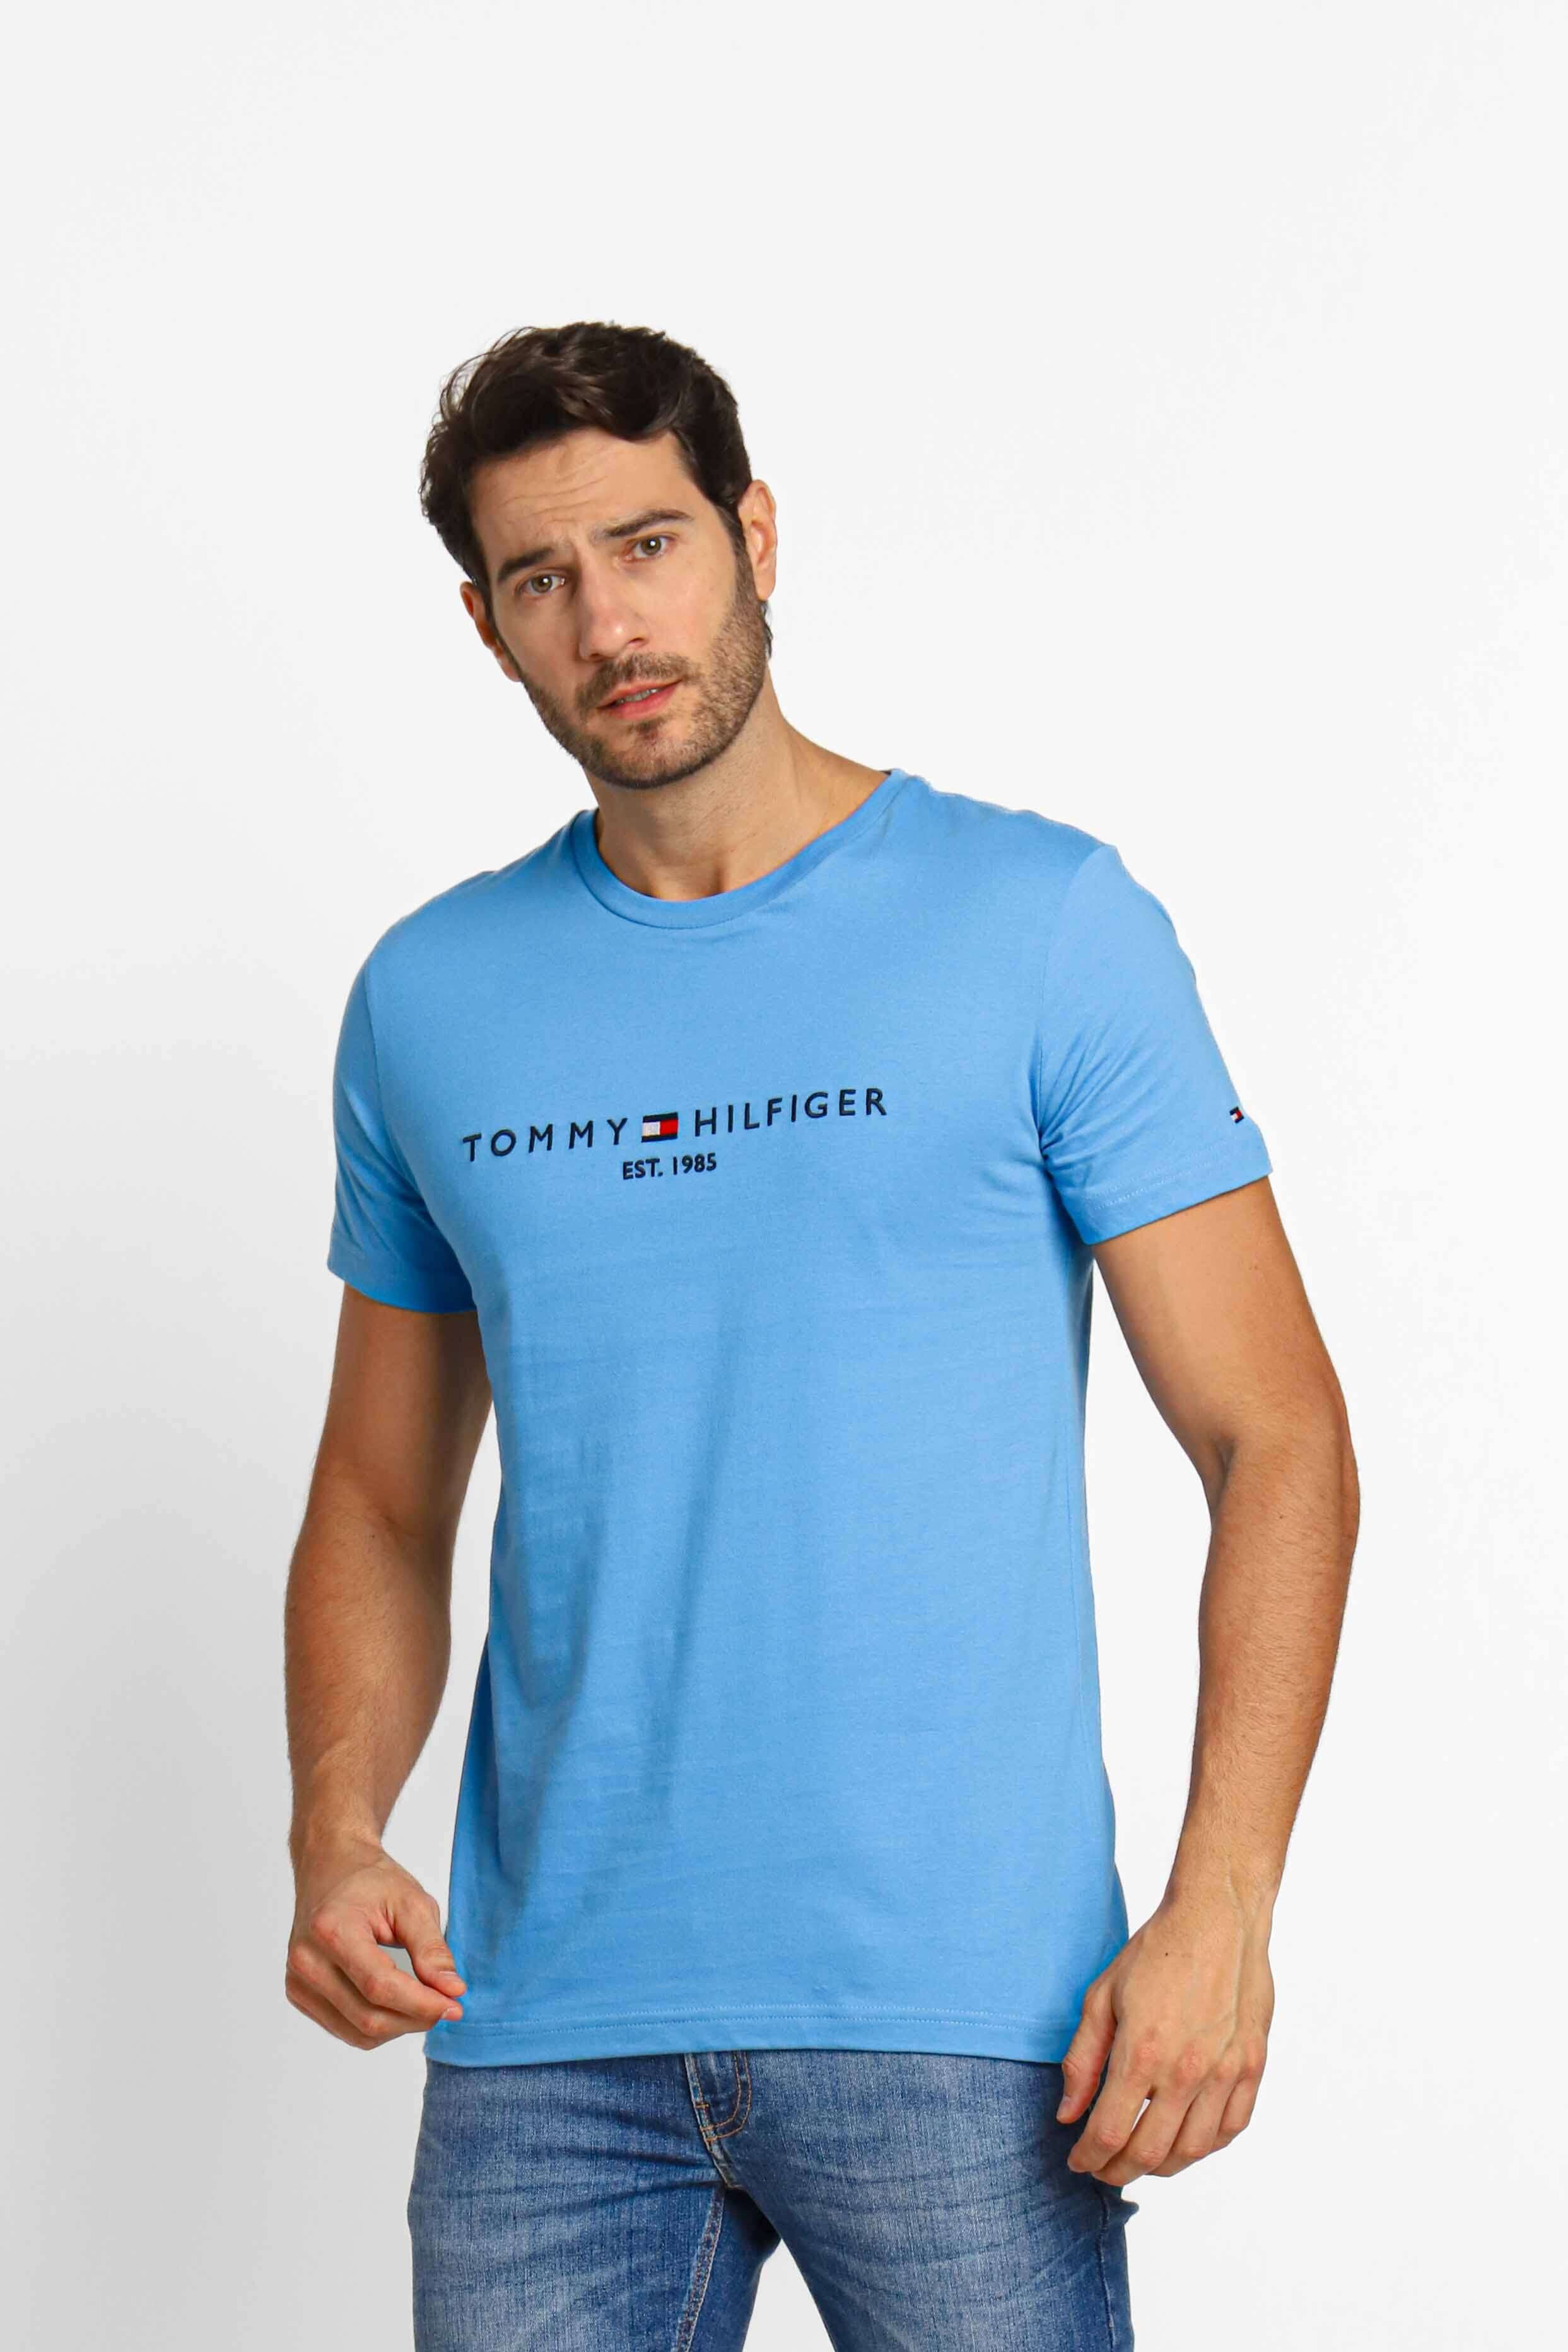 Camisa Tommy Hilfiger Reta Bolso Azul-Marinho - Compre Agora